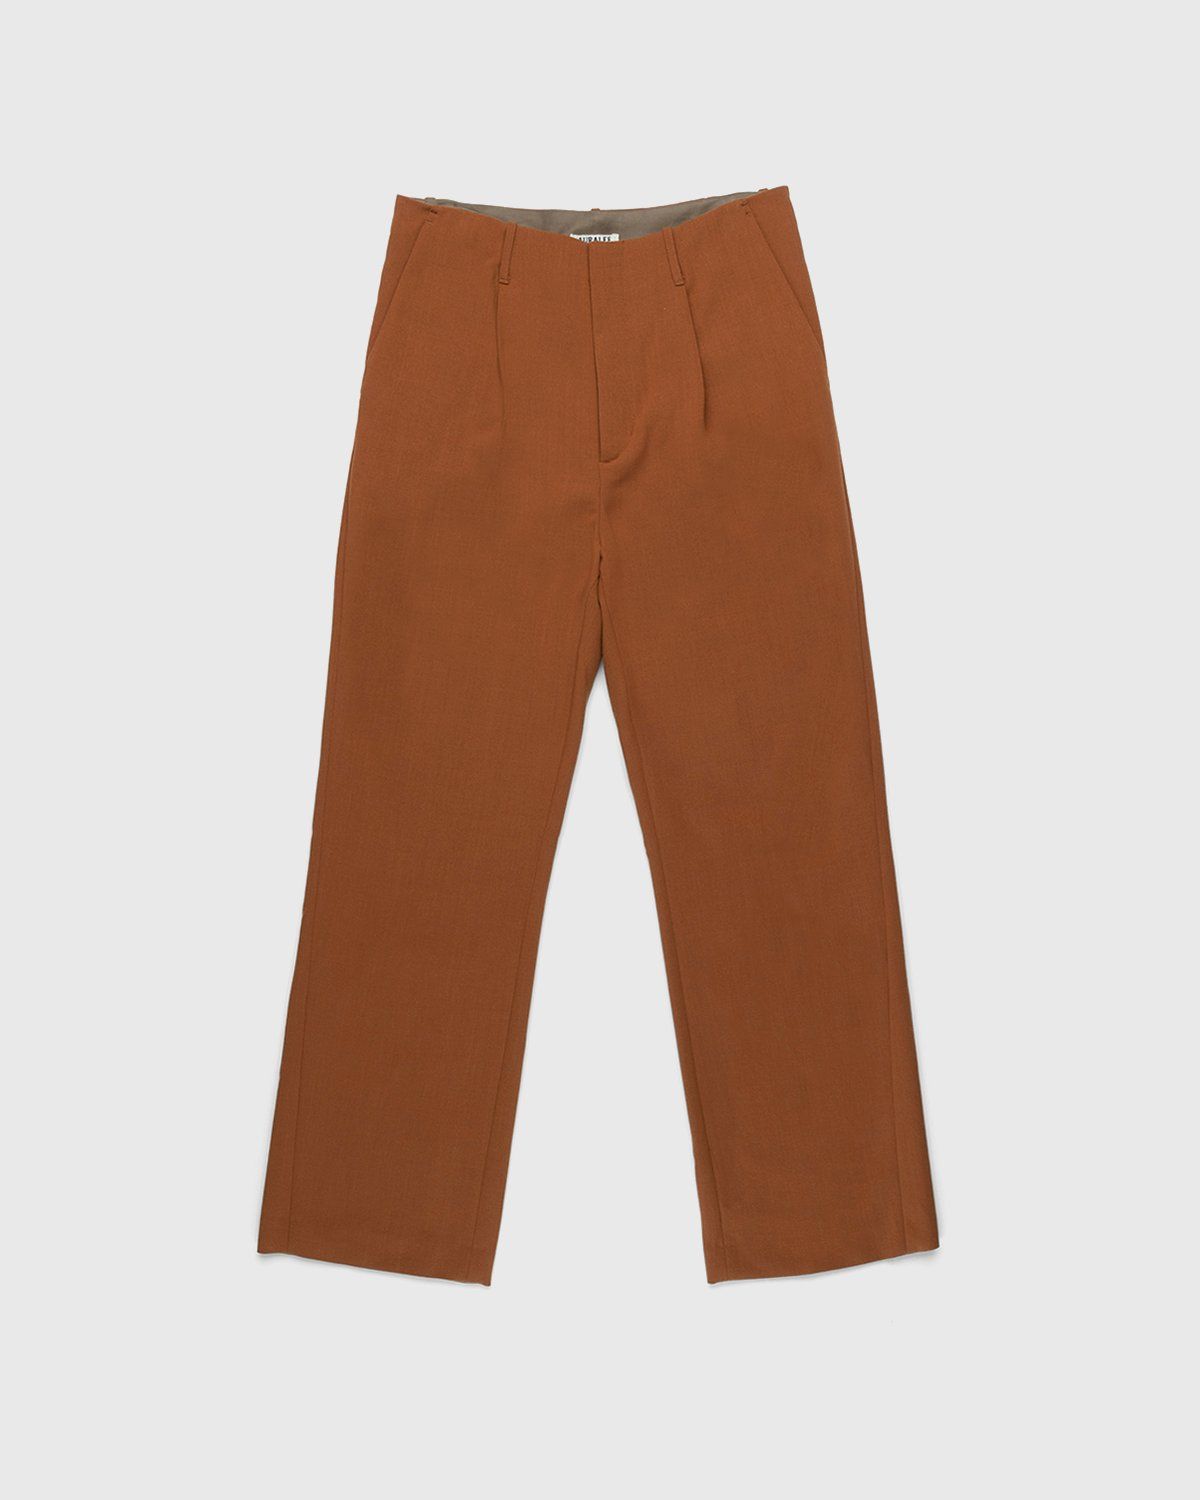 Auralee – Ultra-Fine Wool Pants Dark Orange - Pants - Orange - Image 1